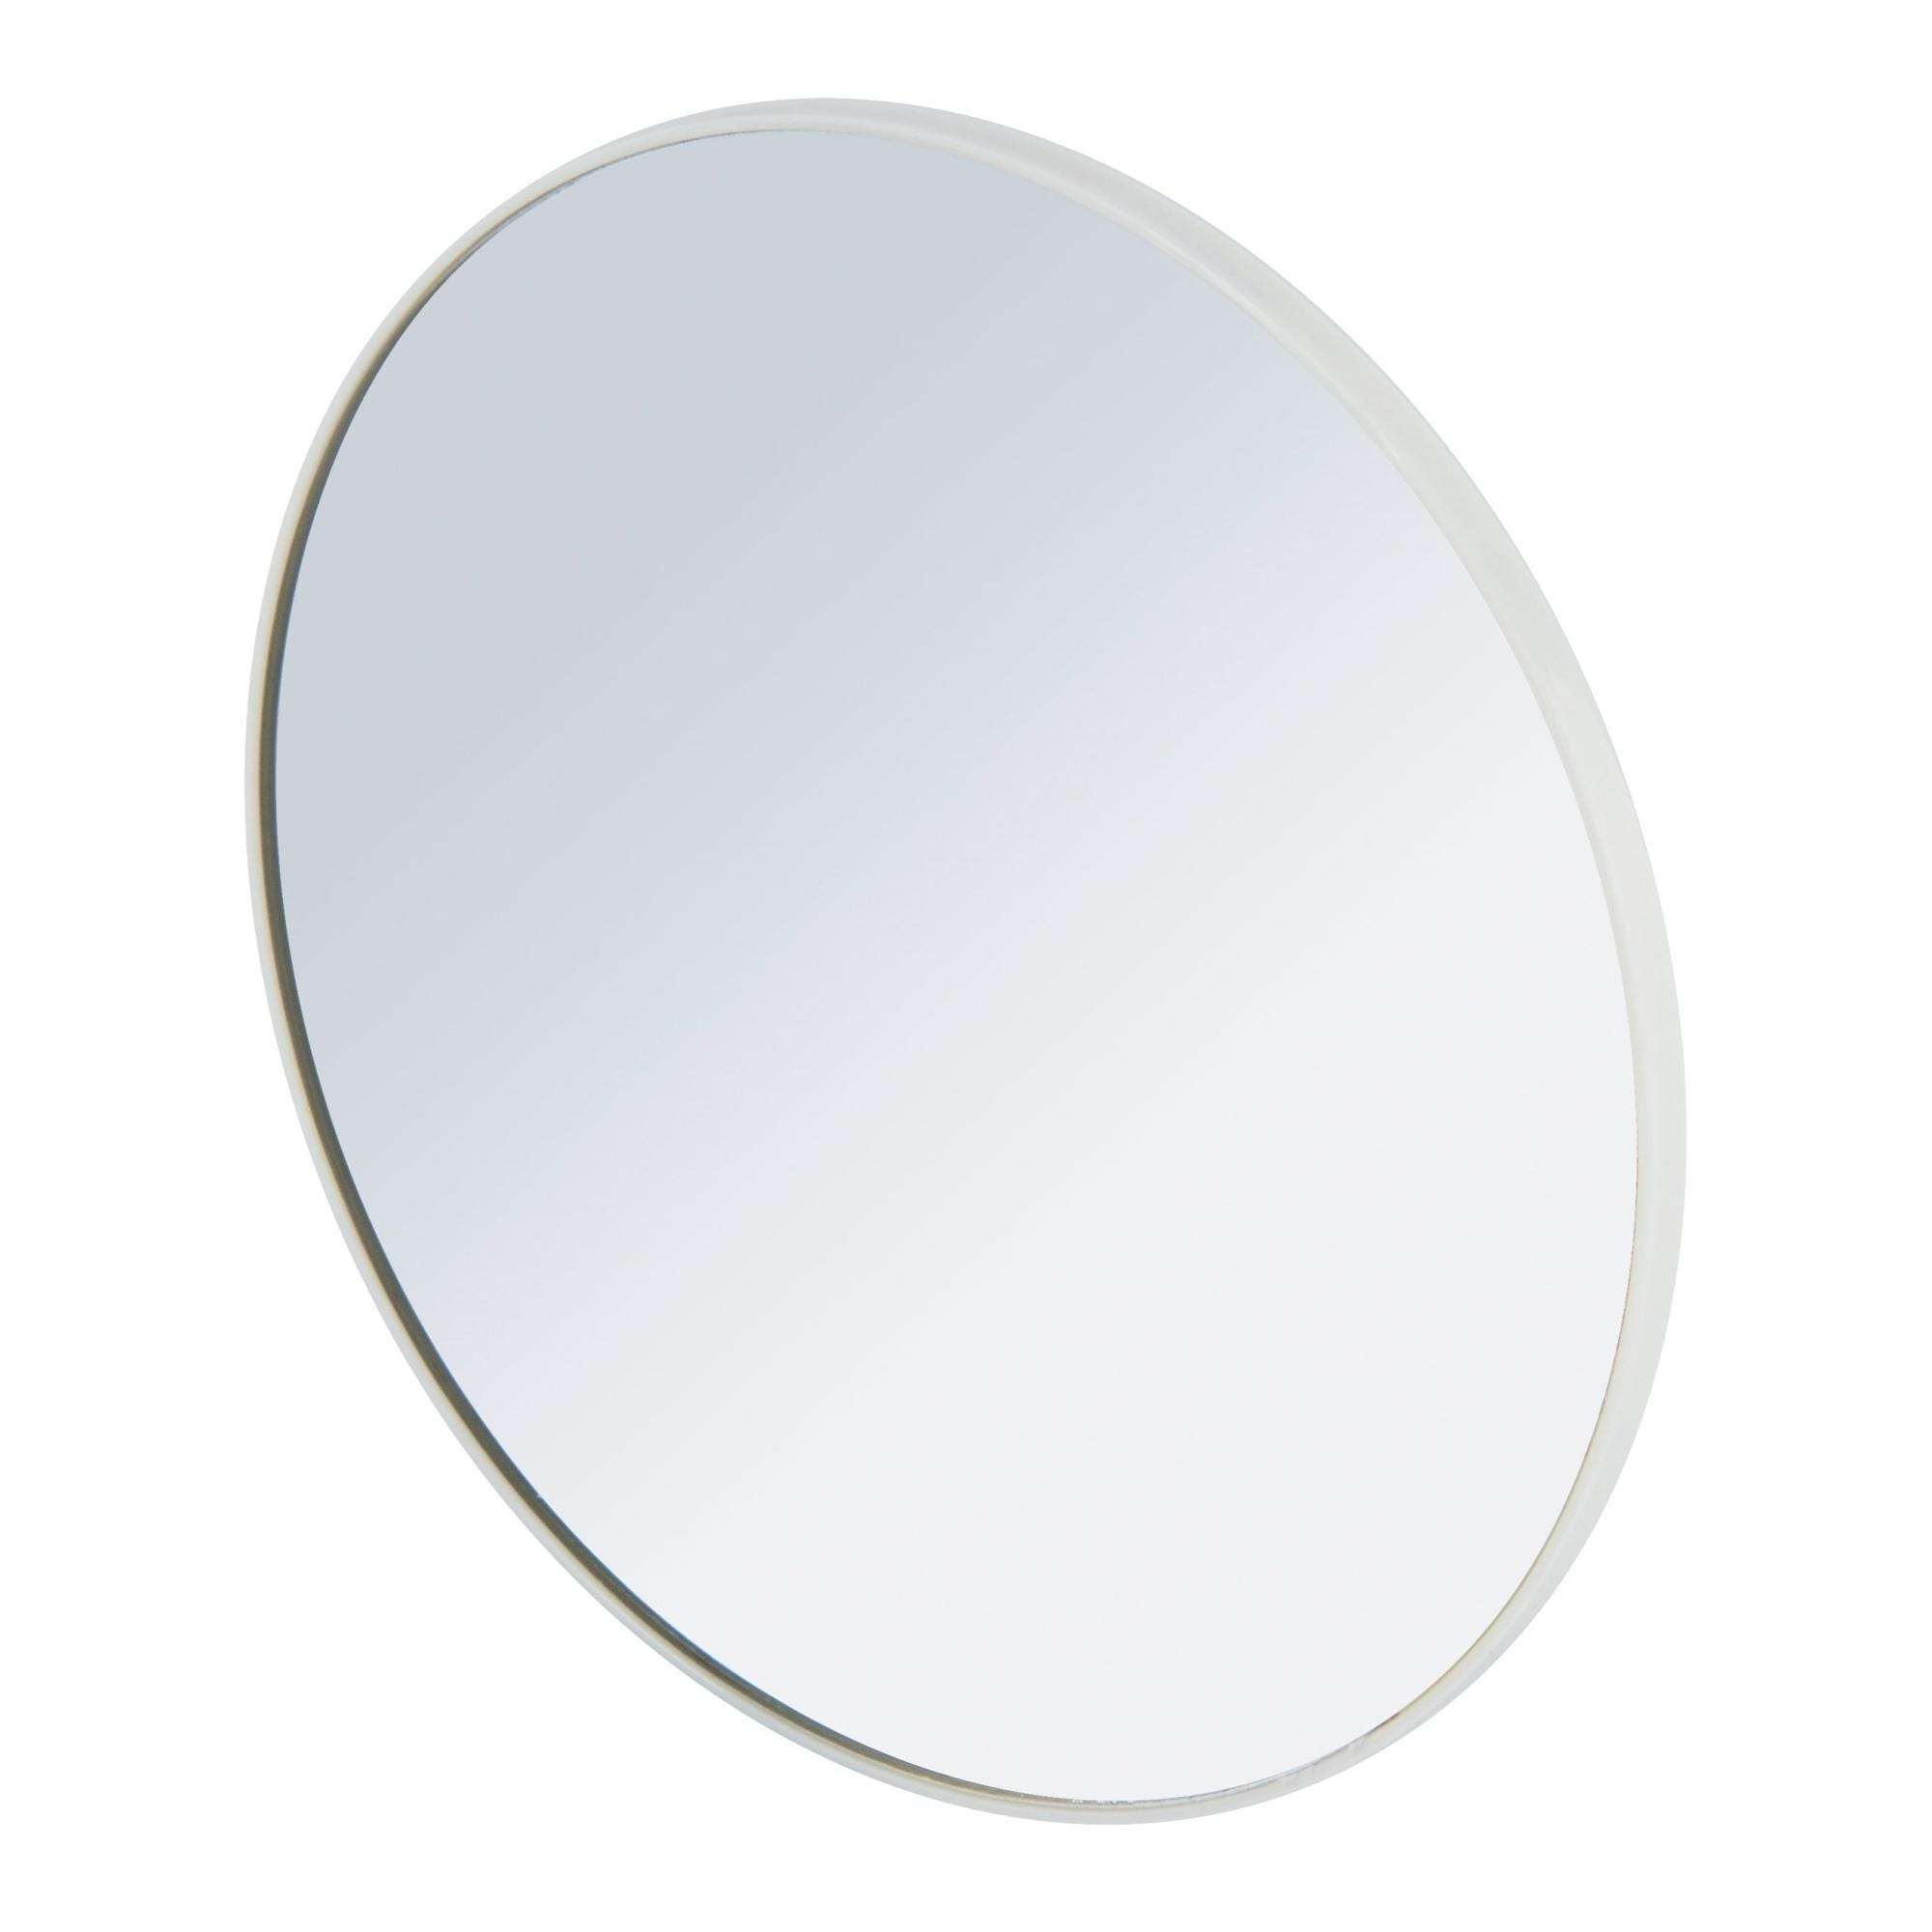 Specchio adesivo tondo L 12 x H 12 cm Ø 12 cmWenko